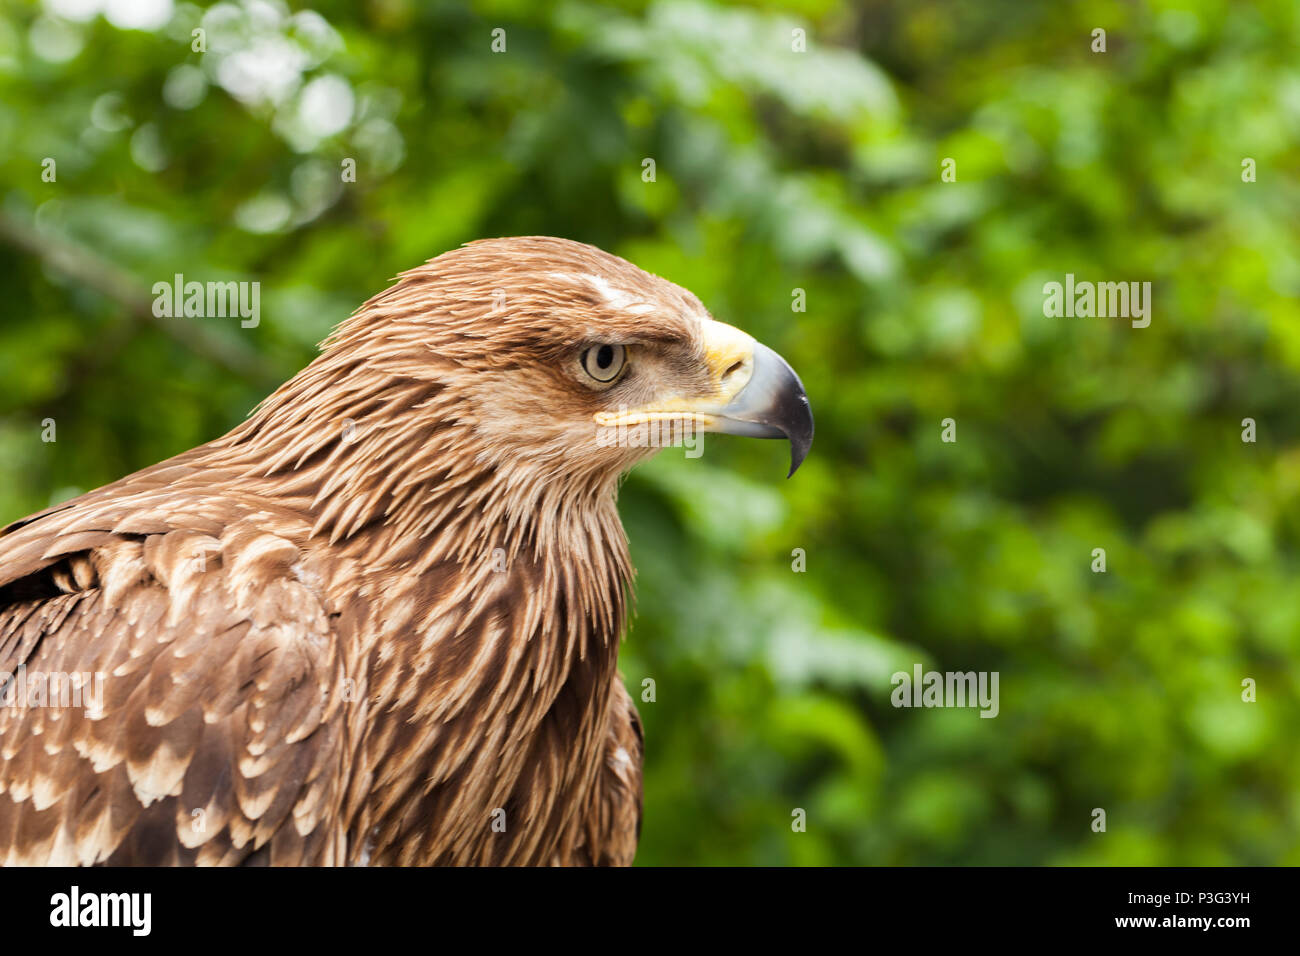 La foto del águila real Aquila chrysaetos, uno de los mejor conocidos de aves de presa Foto de stock